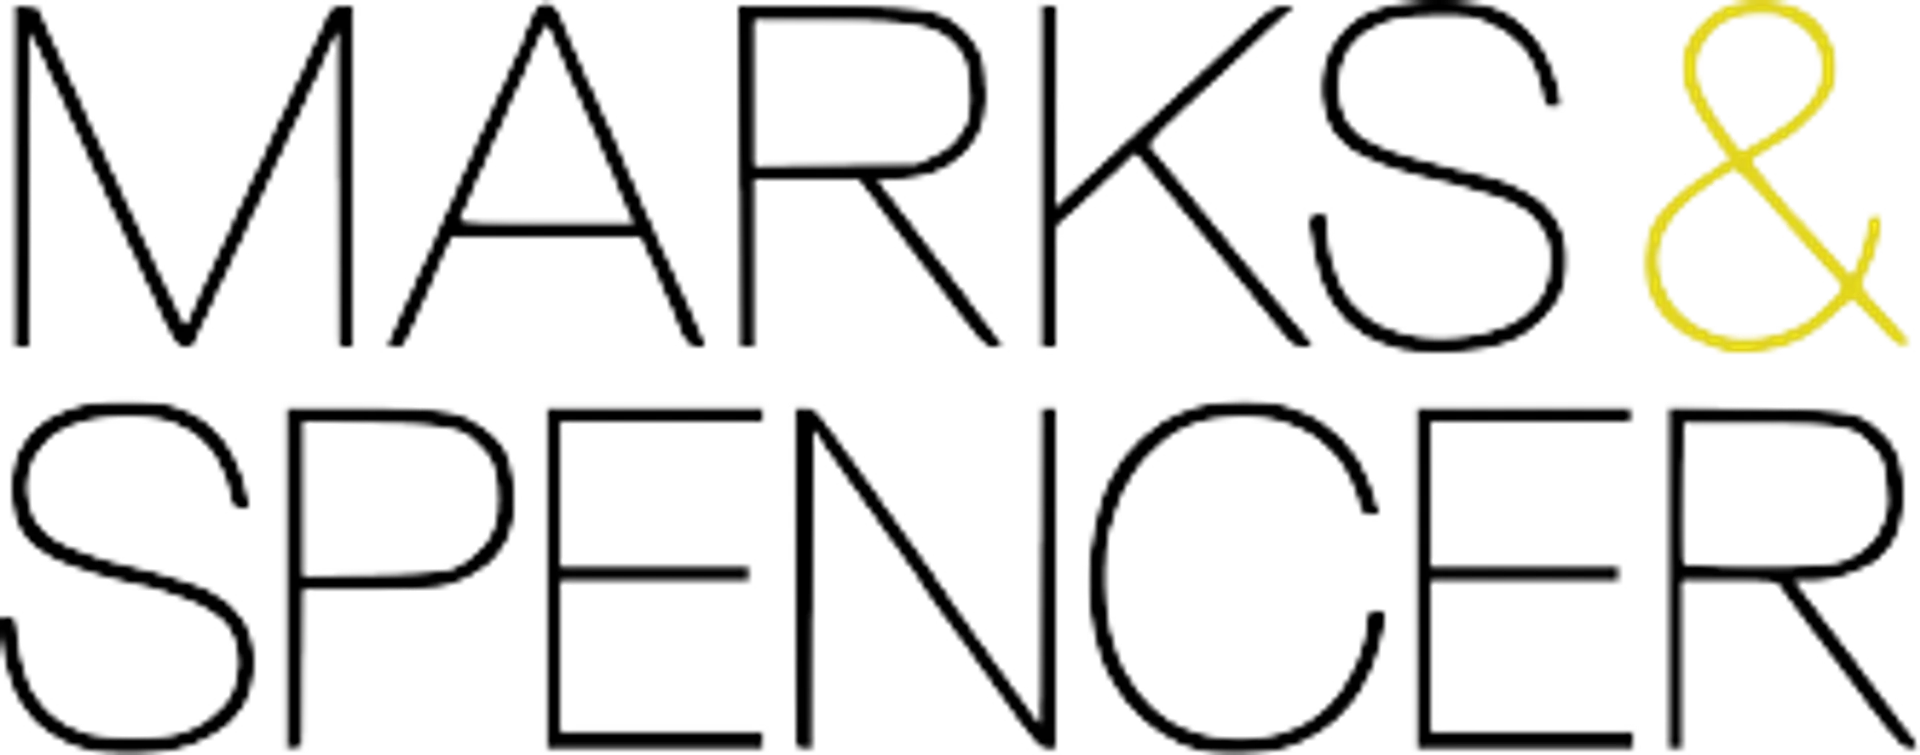 MARKS & SPENCER logo of current flyer